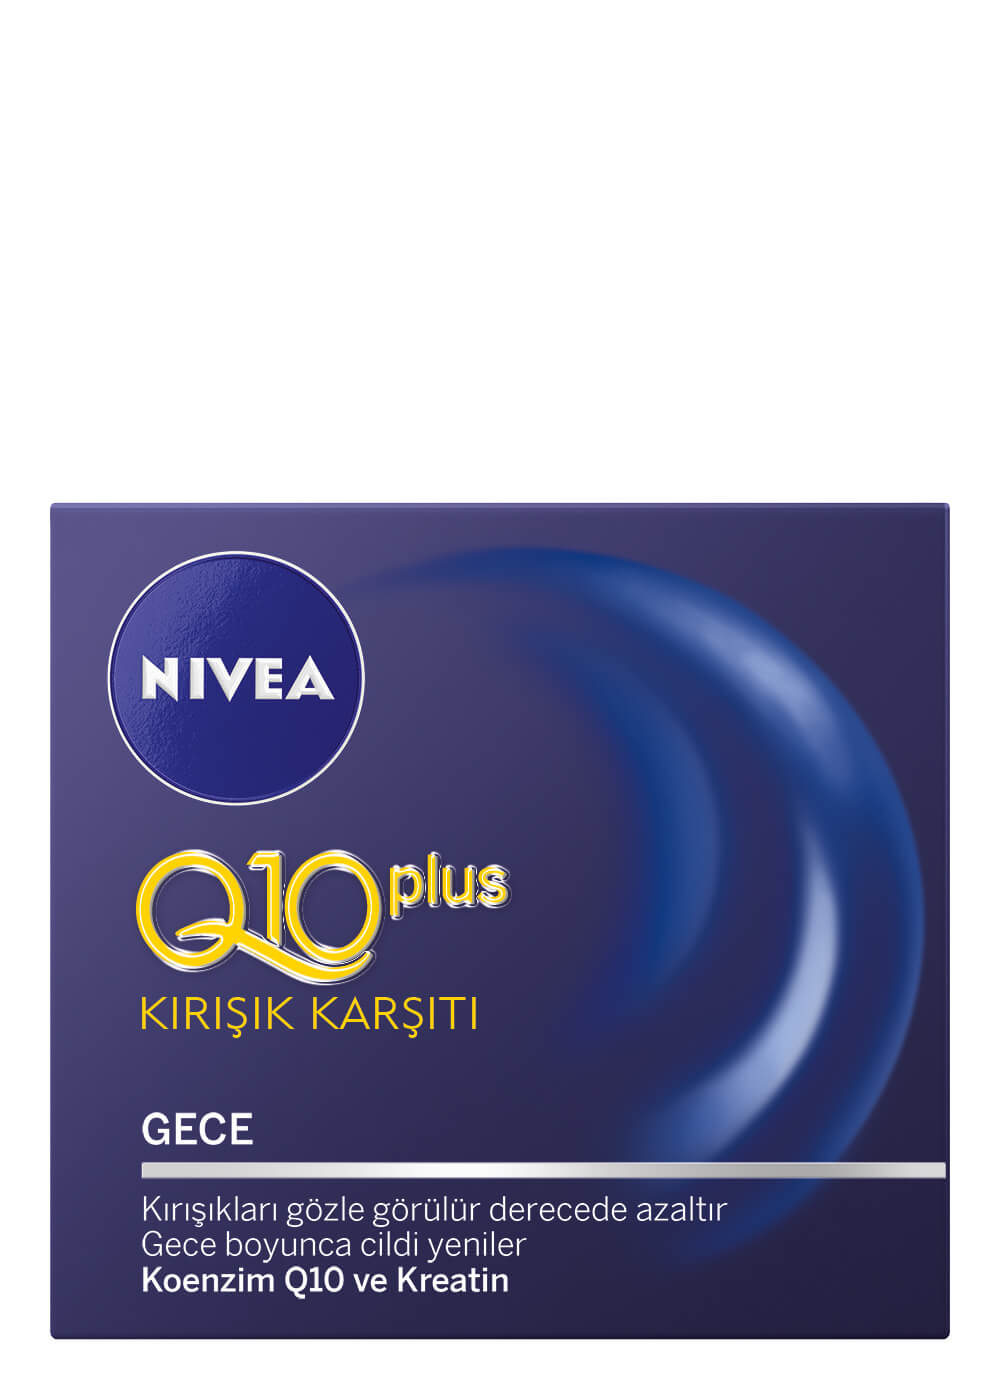 Nivea Q10 Plus Kırışık Karşıtı Gece Kremi 50ml